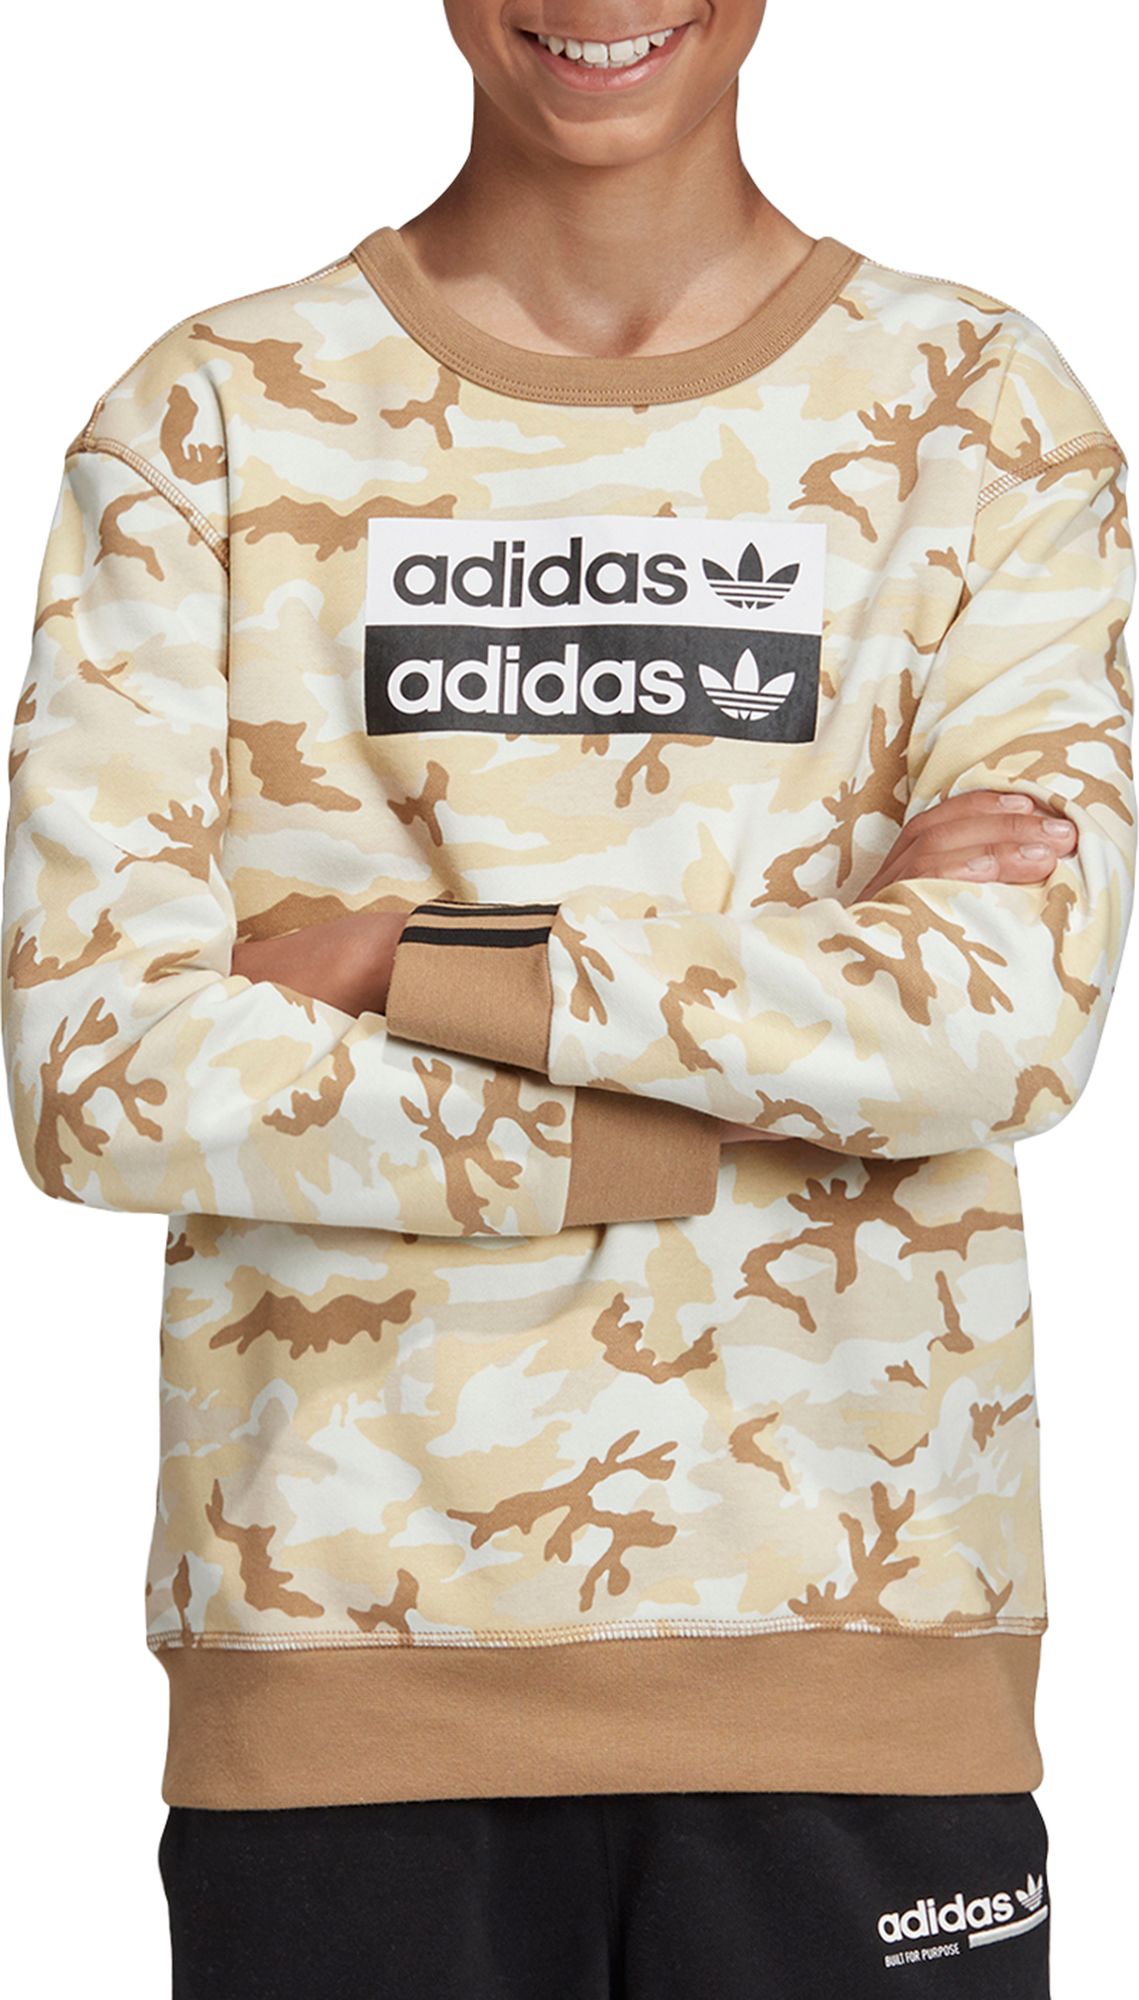 adidas youth camo hoodie